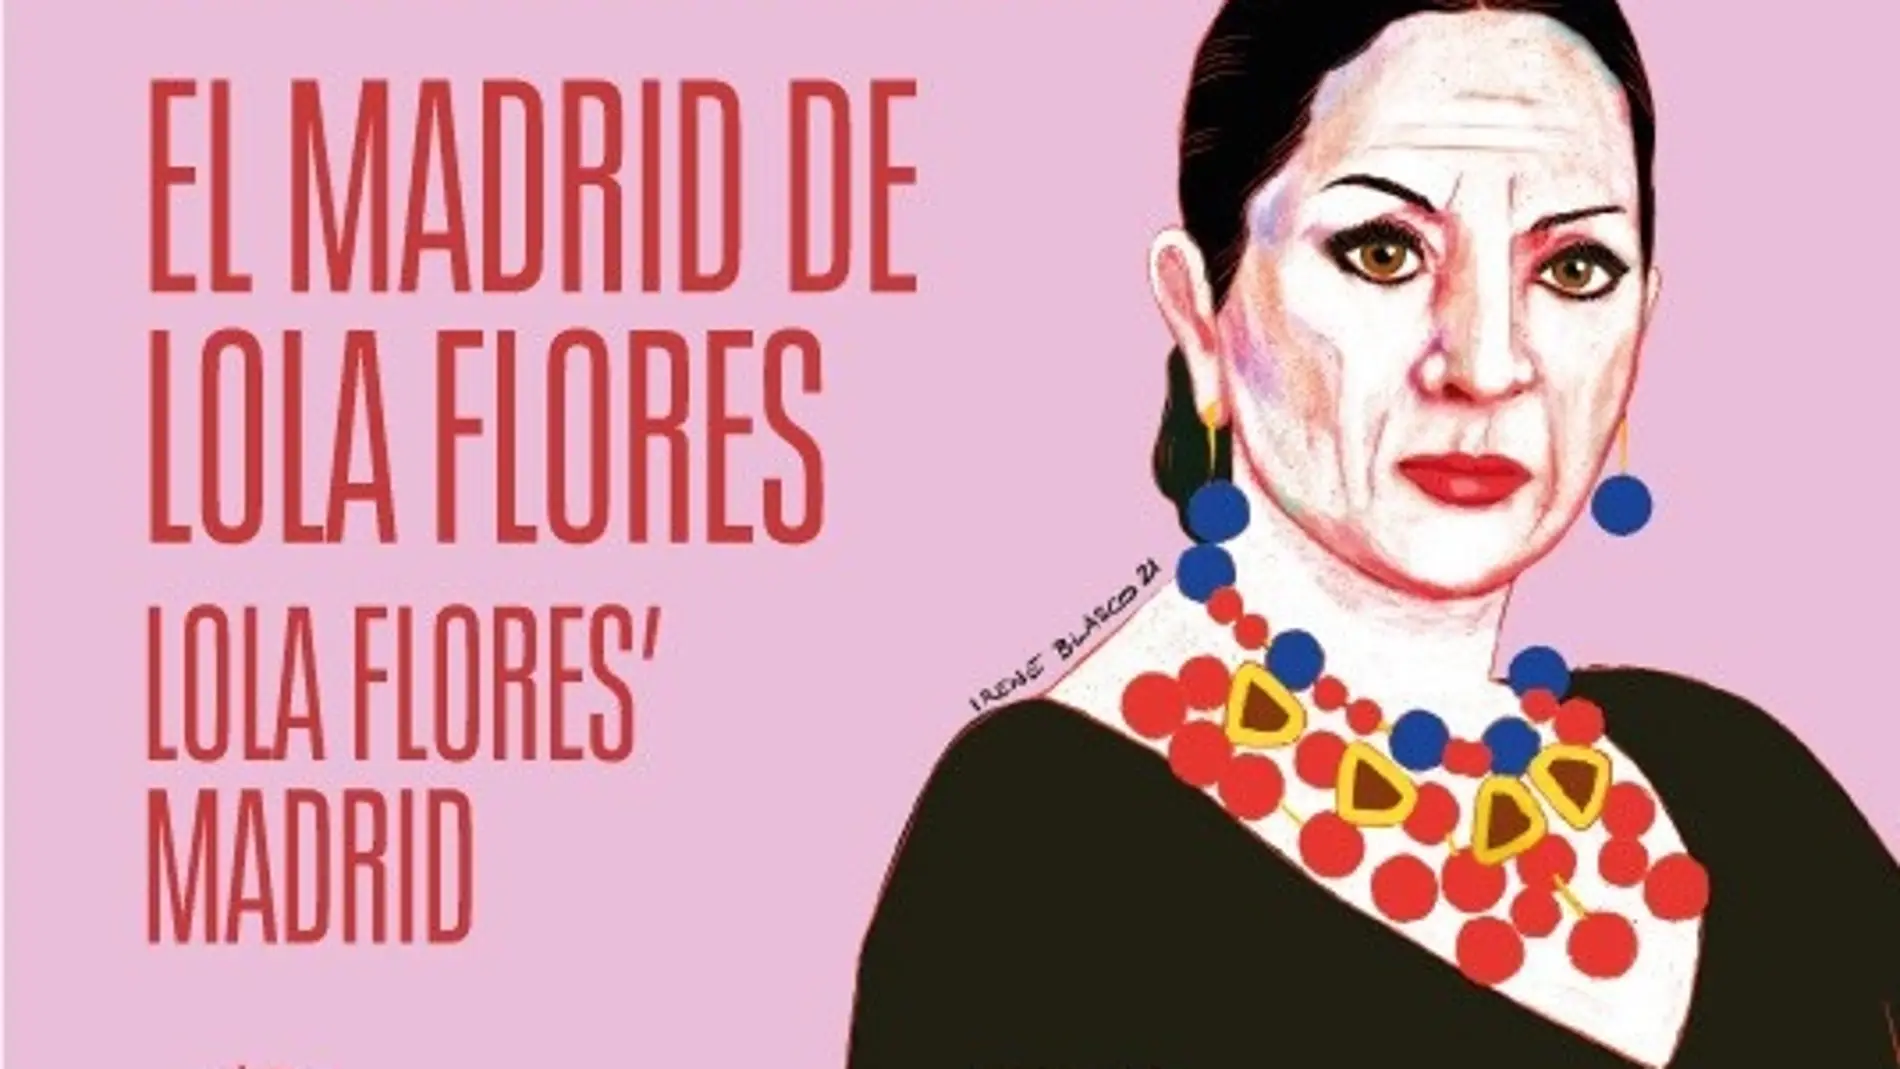 El Ayuntamiento publica un mapa ilustrado para descubrir el Madrid de Lola Flores